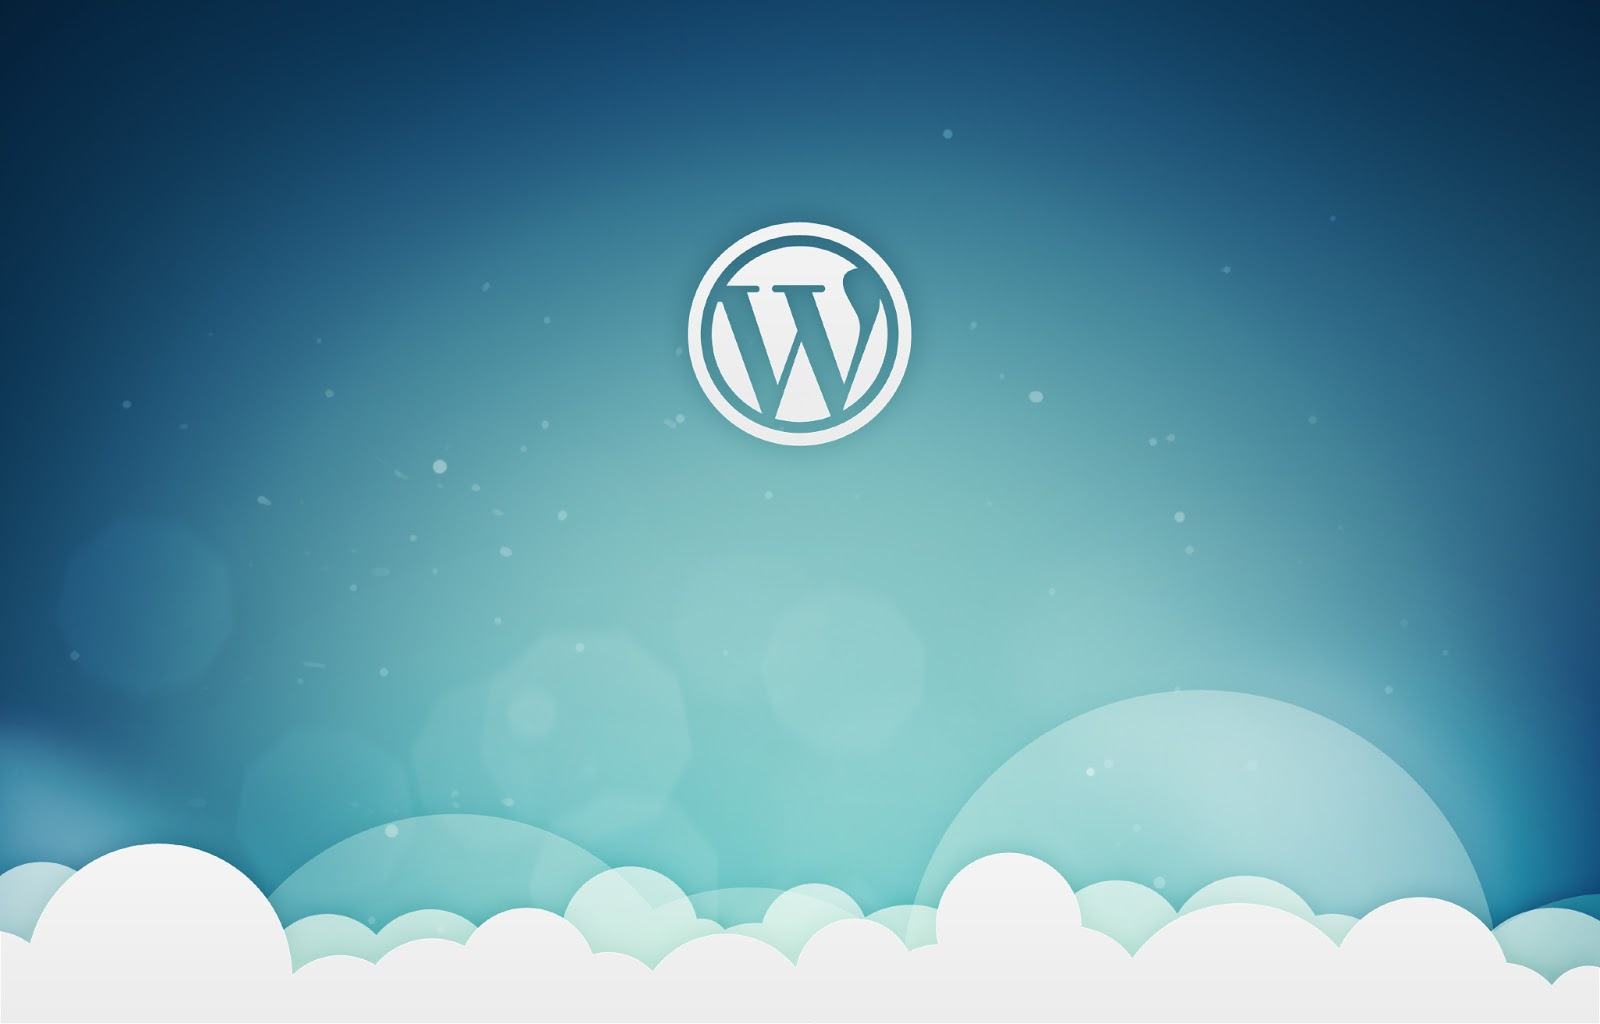 Creare pagine con WordPress app la guida per principianti 18